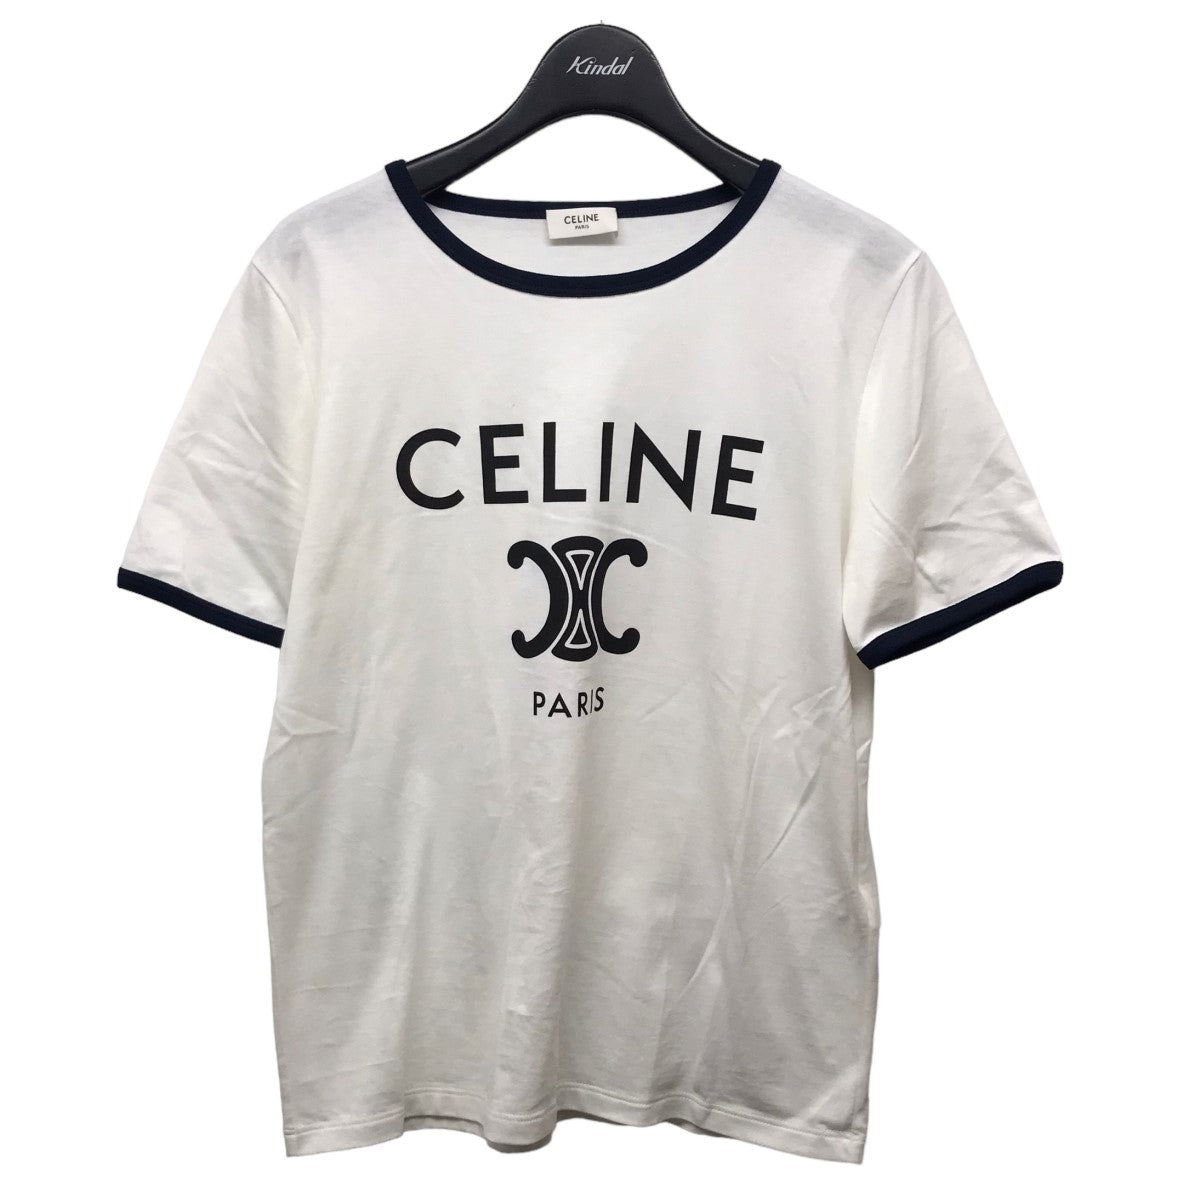 CELINE(セリーヌ) CELINE PARIS プリントTシャツ 2X872671Q ホワイト 